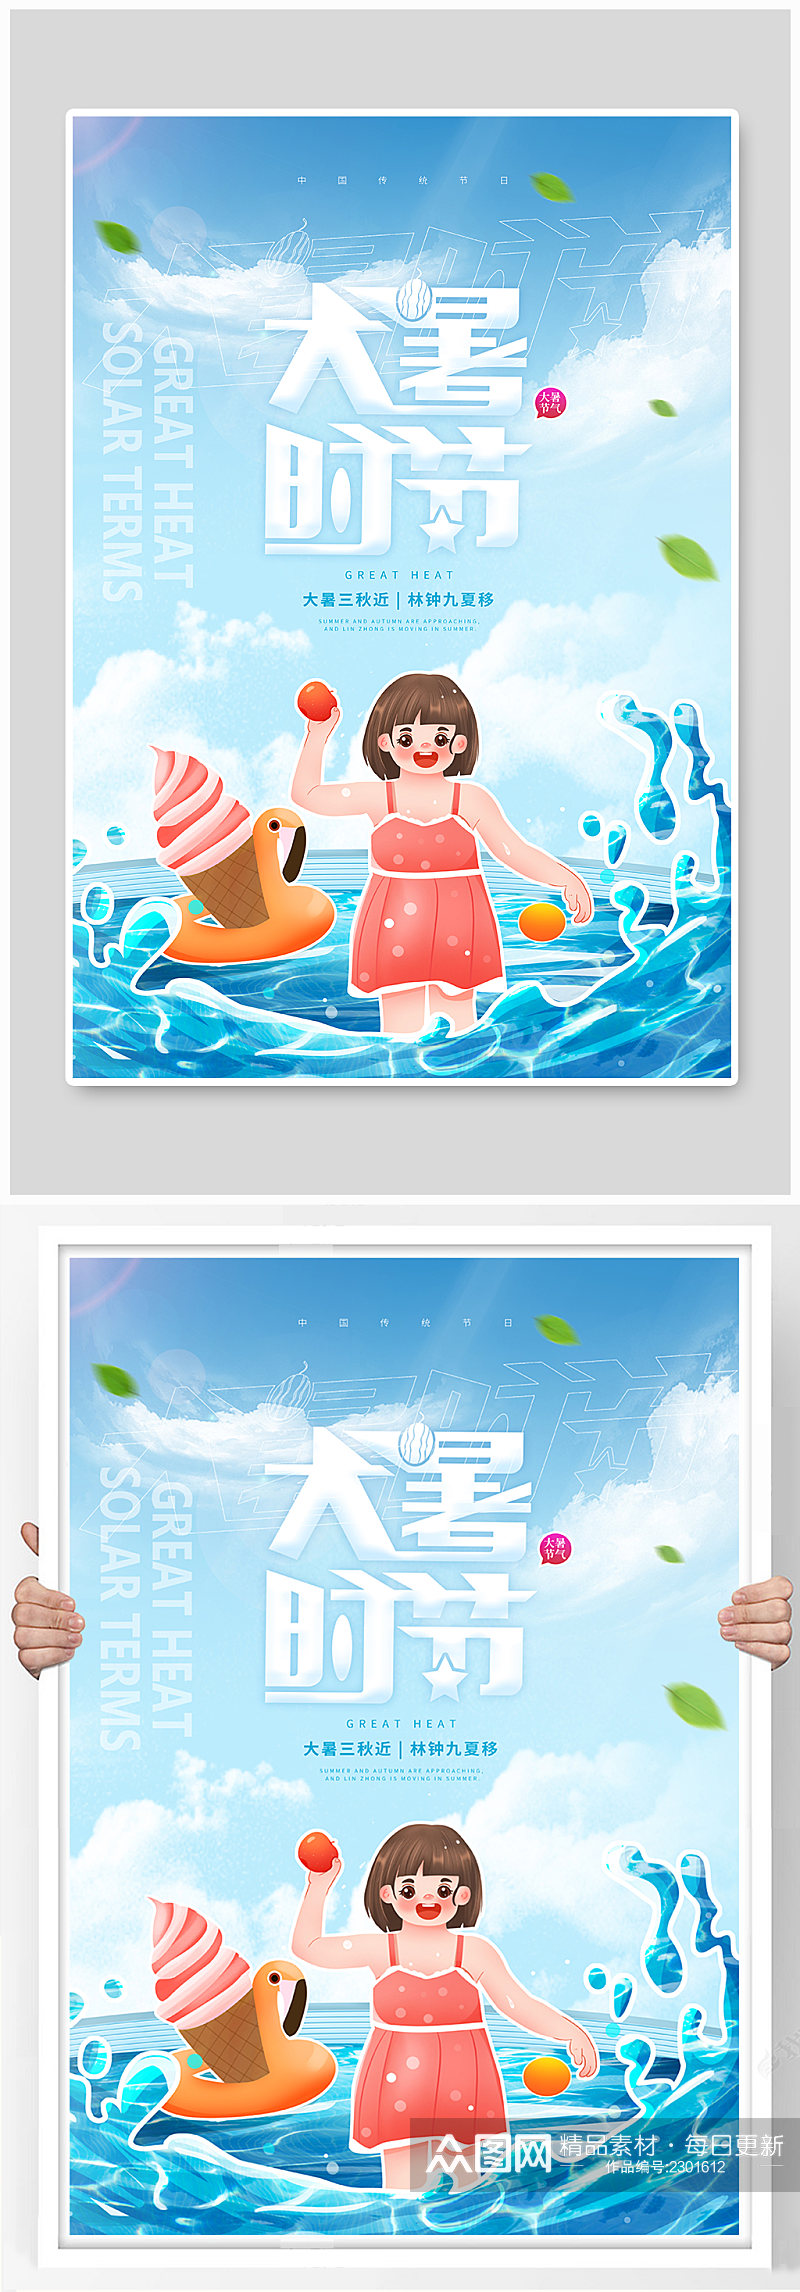 插画风女孩海边游玩大暑节气海报素材